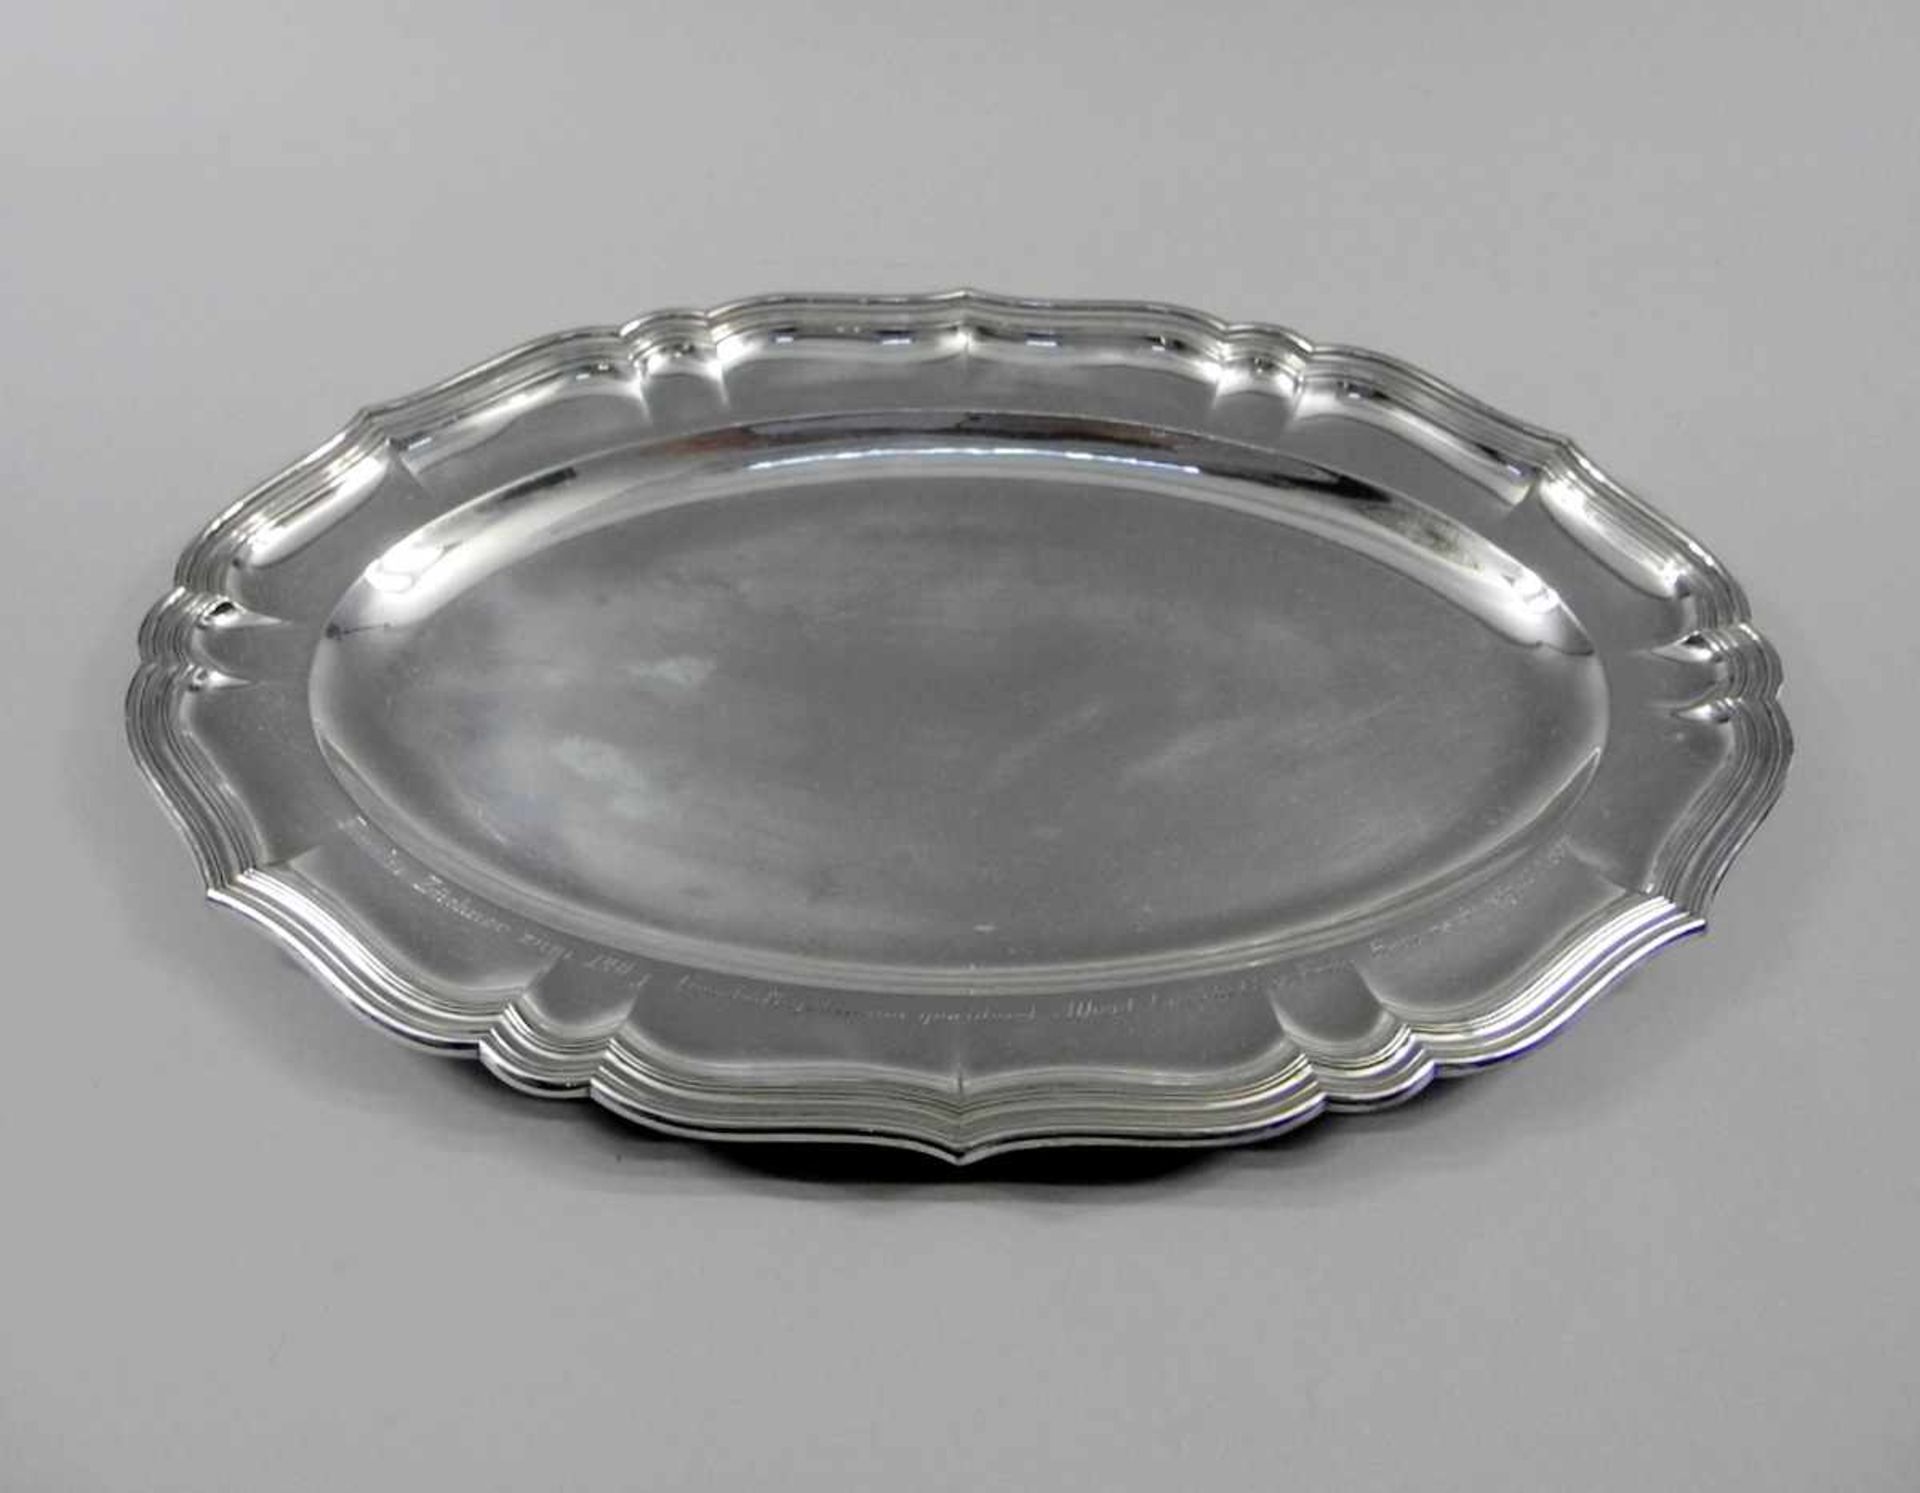 Ovales Silber-TablettSilber 800, rückseitig im Spiegel mit Halbmond und Krone, Feingehalt und